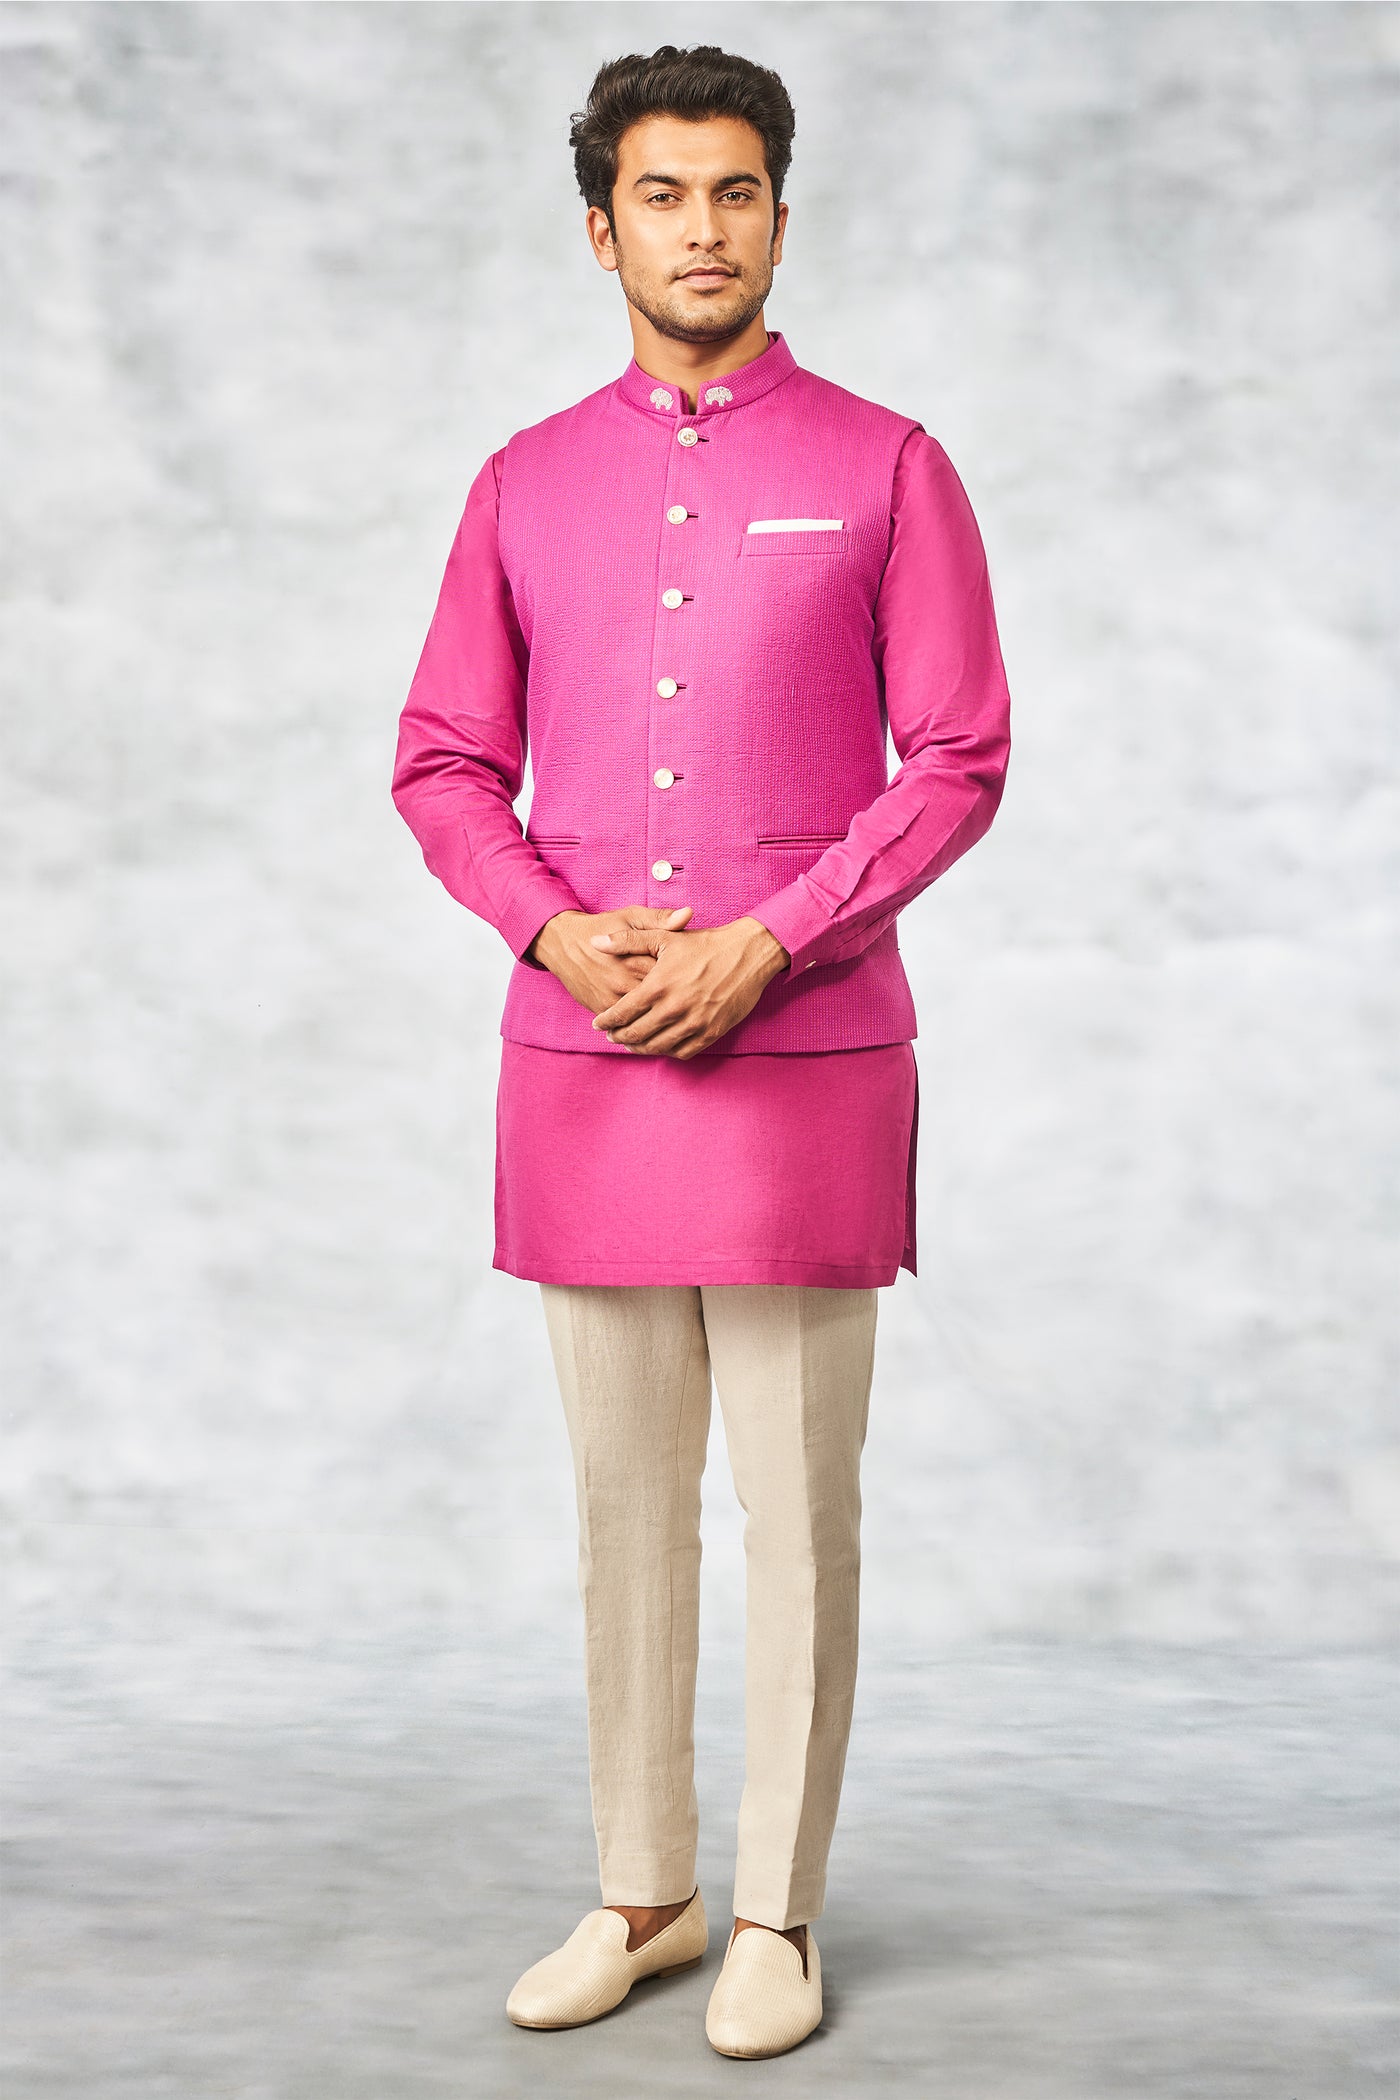 Anita Dongre menswear Raghav bundi bandi purple indian designer wear wedding online shopping melange singapore festive jacket